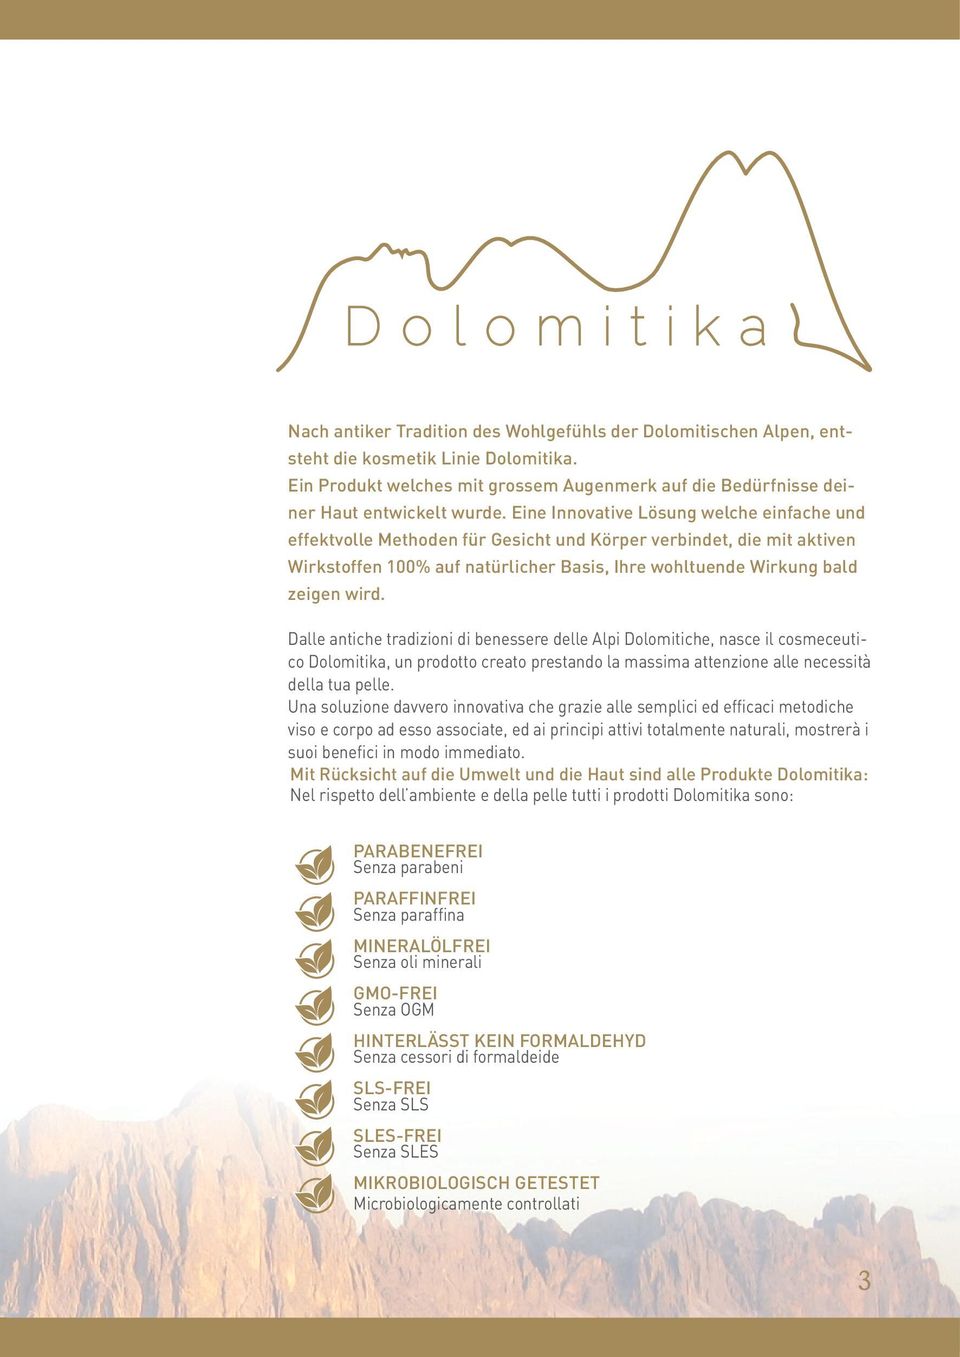 Dalle antiche tradizioni di benessere delle Alpi Dolomitiche, nasce il cosmeceutico Dolomitika, un prodotto creato prestando la massima attenzione alle necessità della tua pelle.